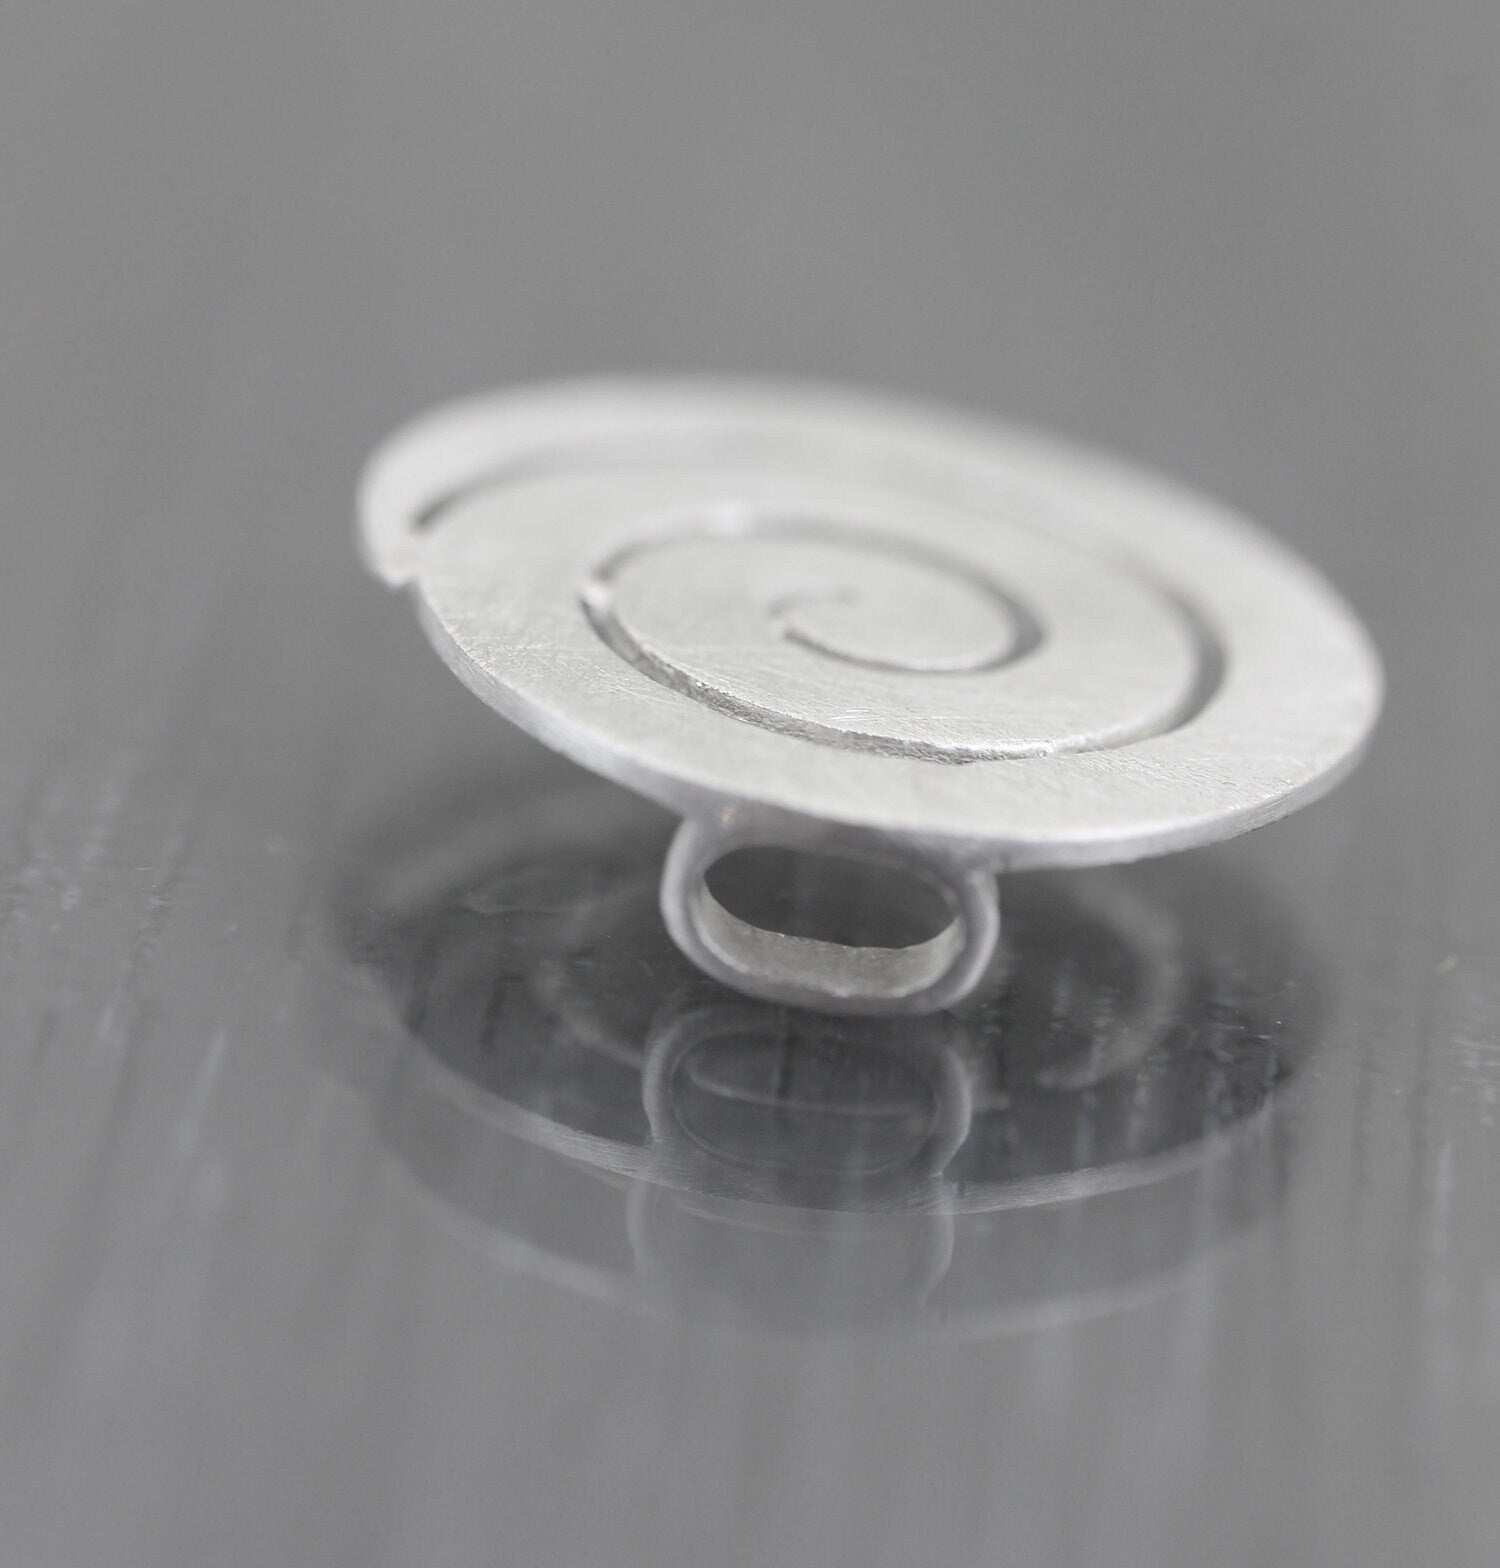 22mm Pendentif Bolo spirale en Argent 925 brossé Ring Ding. Perle charme pour cuir.